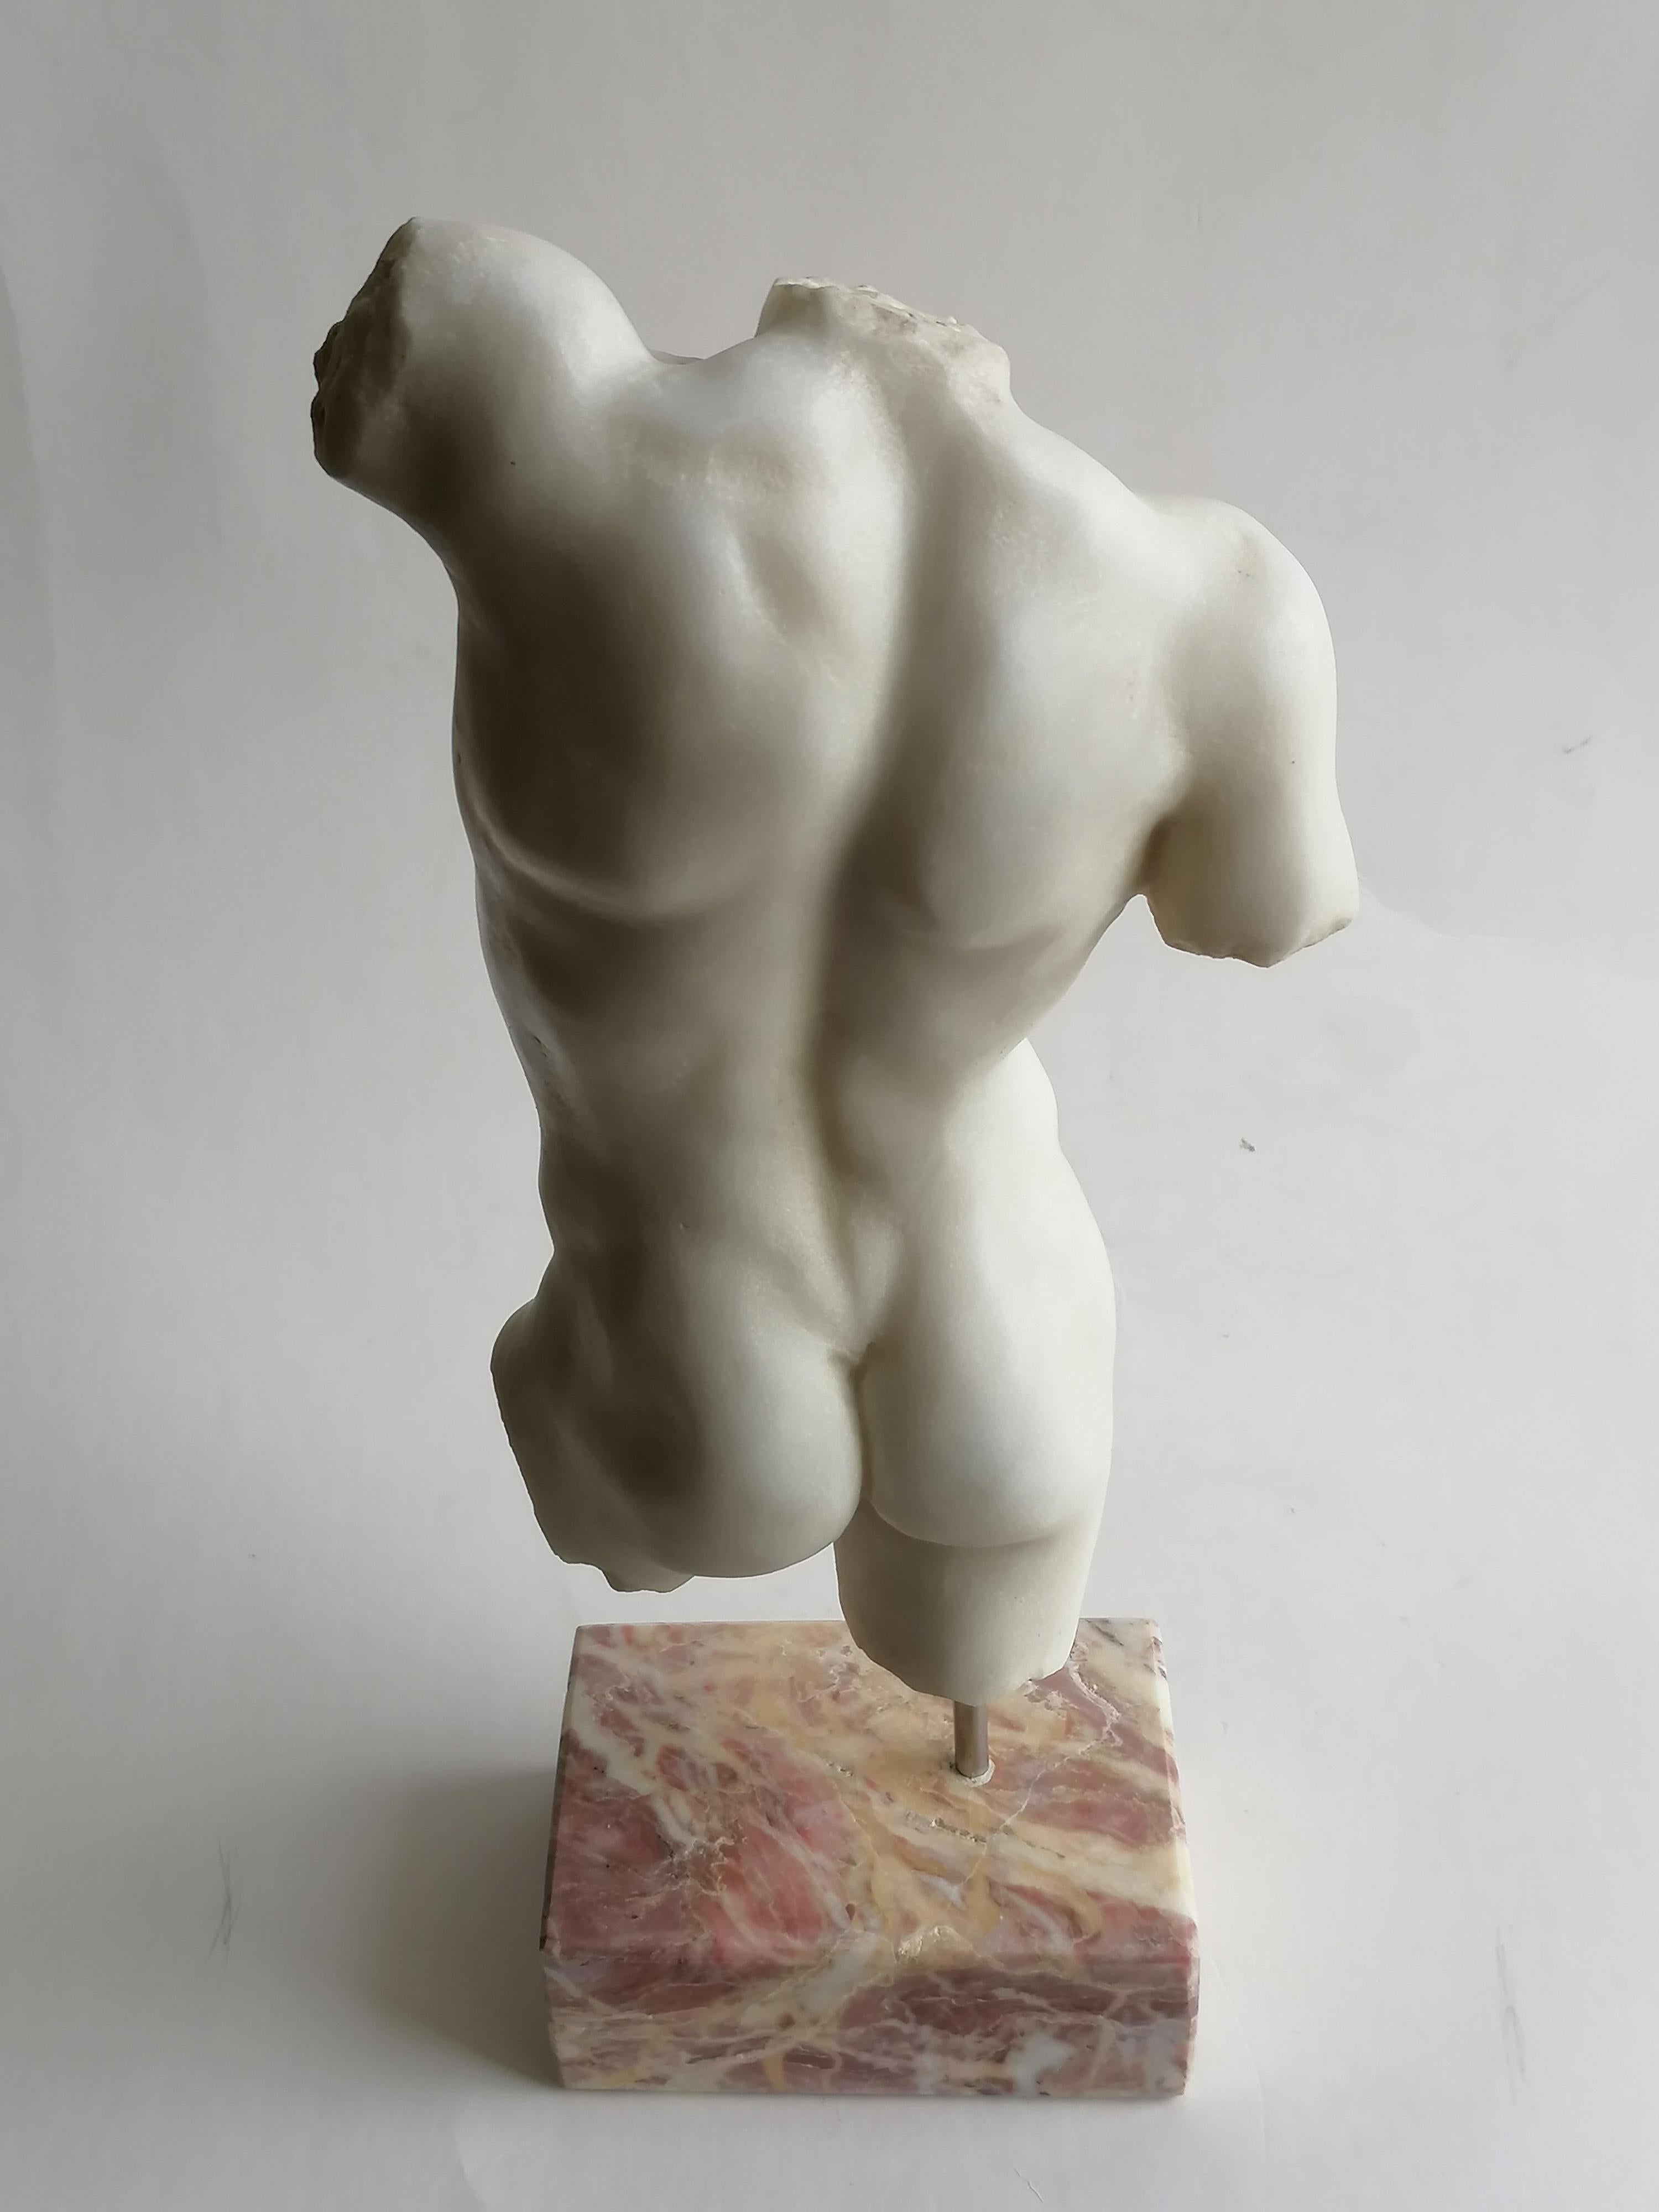 Carrara Marble Torso maschile classico scolpito su marmo bianco di Carrara